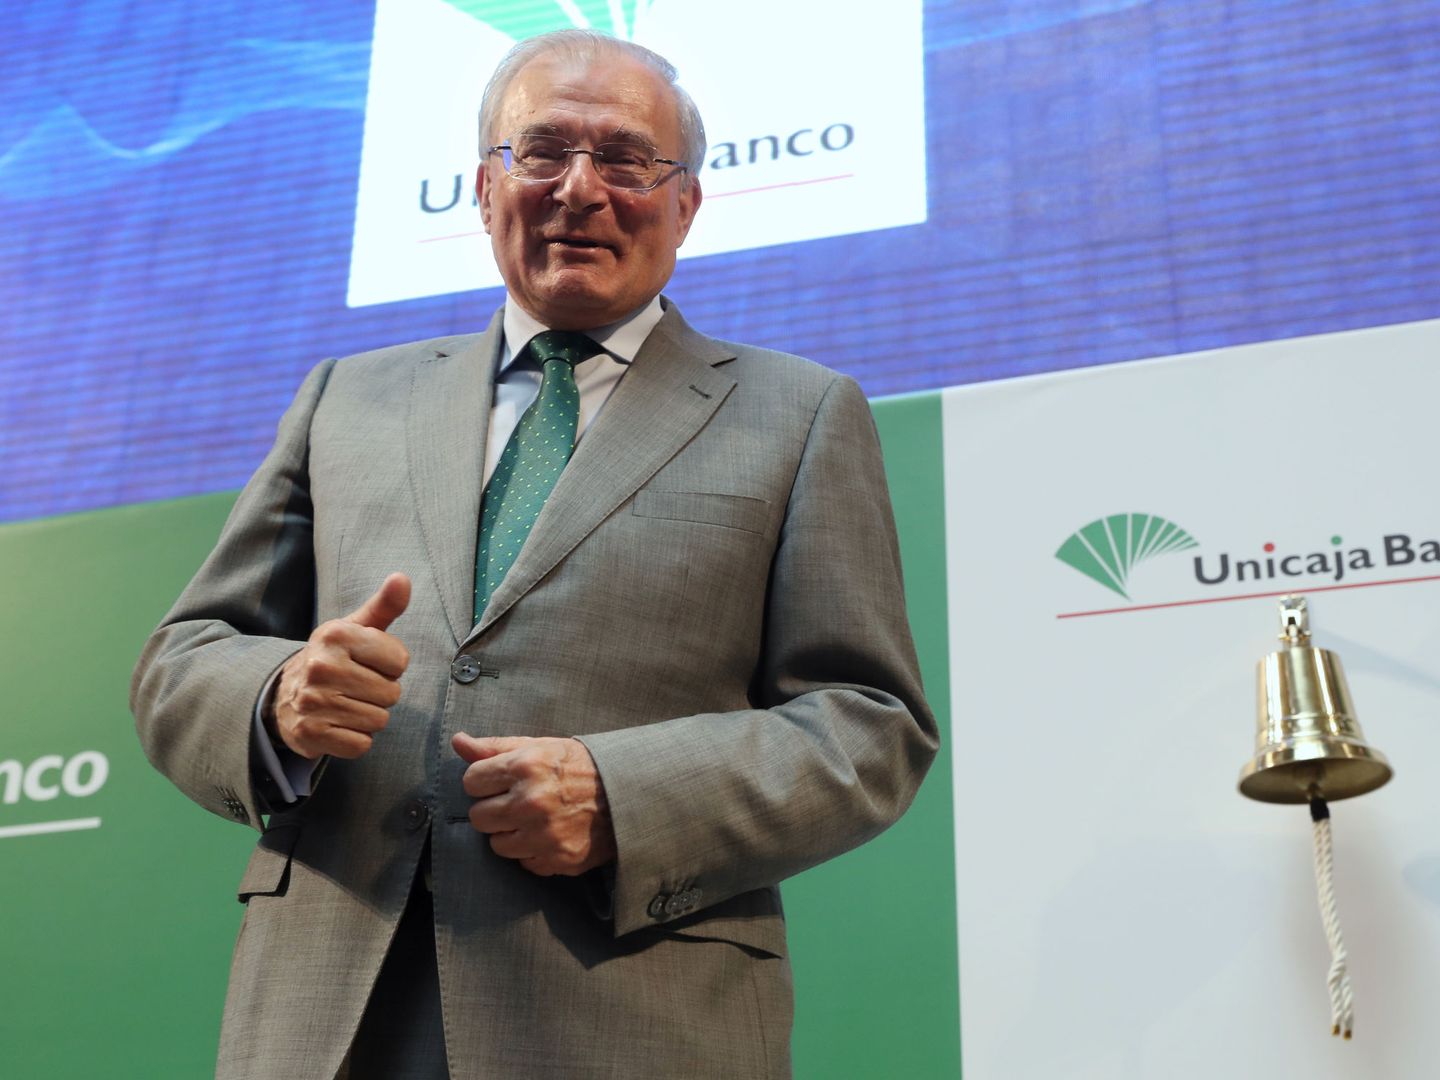 El presidente de Unicaja Banco, Manuel Azuaga, en 2017. (EFE/Sergio Barrenechea)